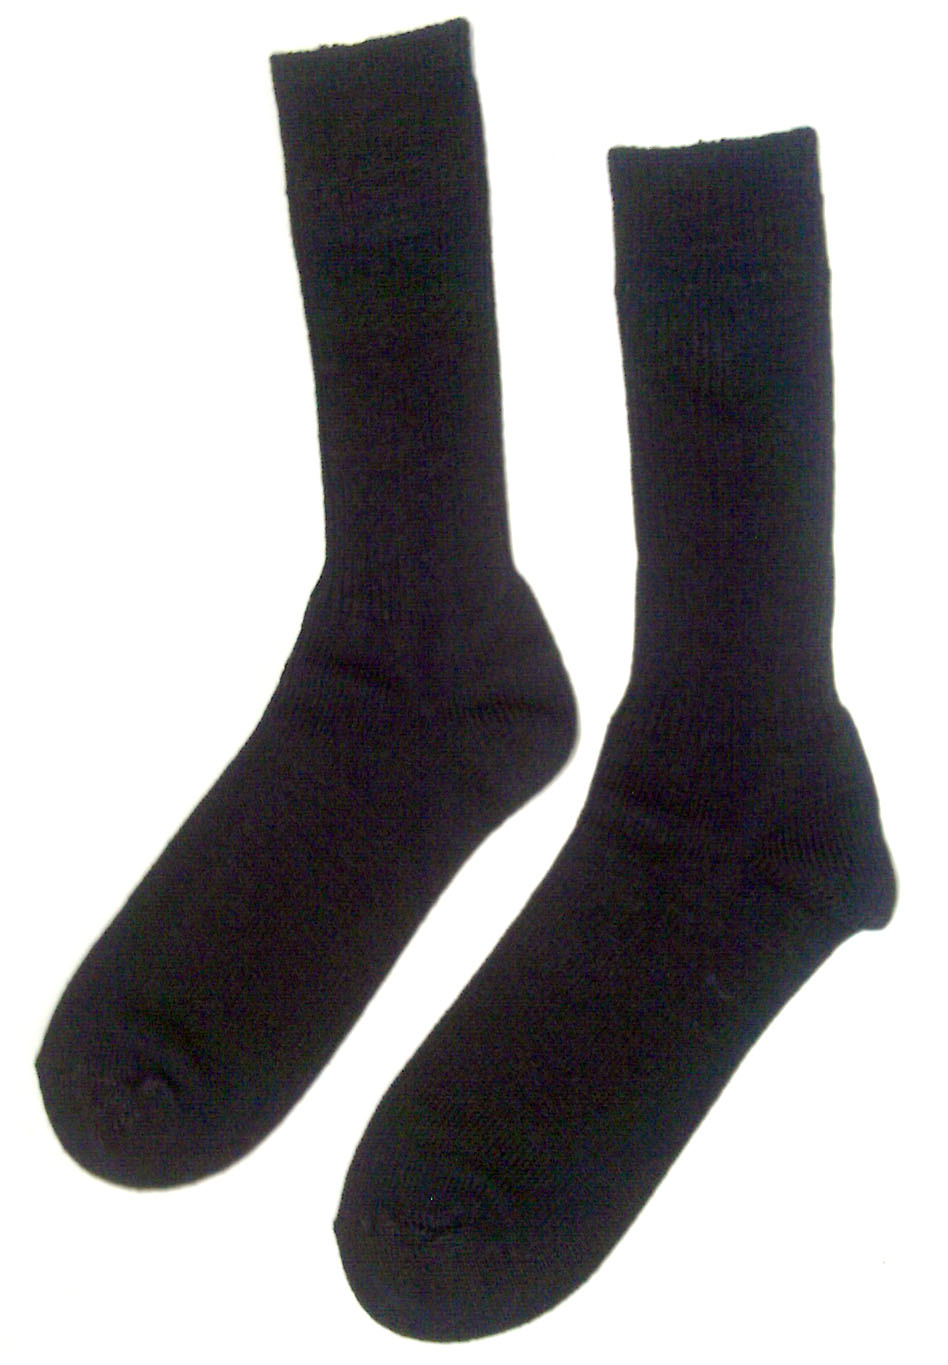 s-socks.jpg